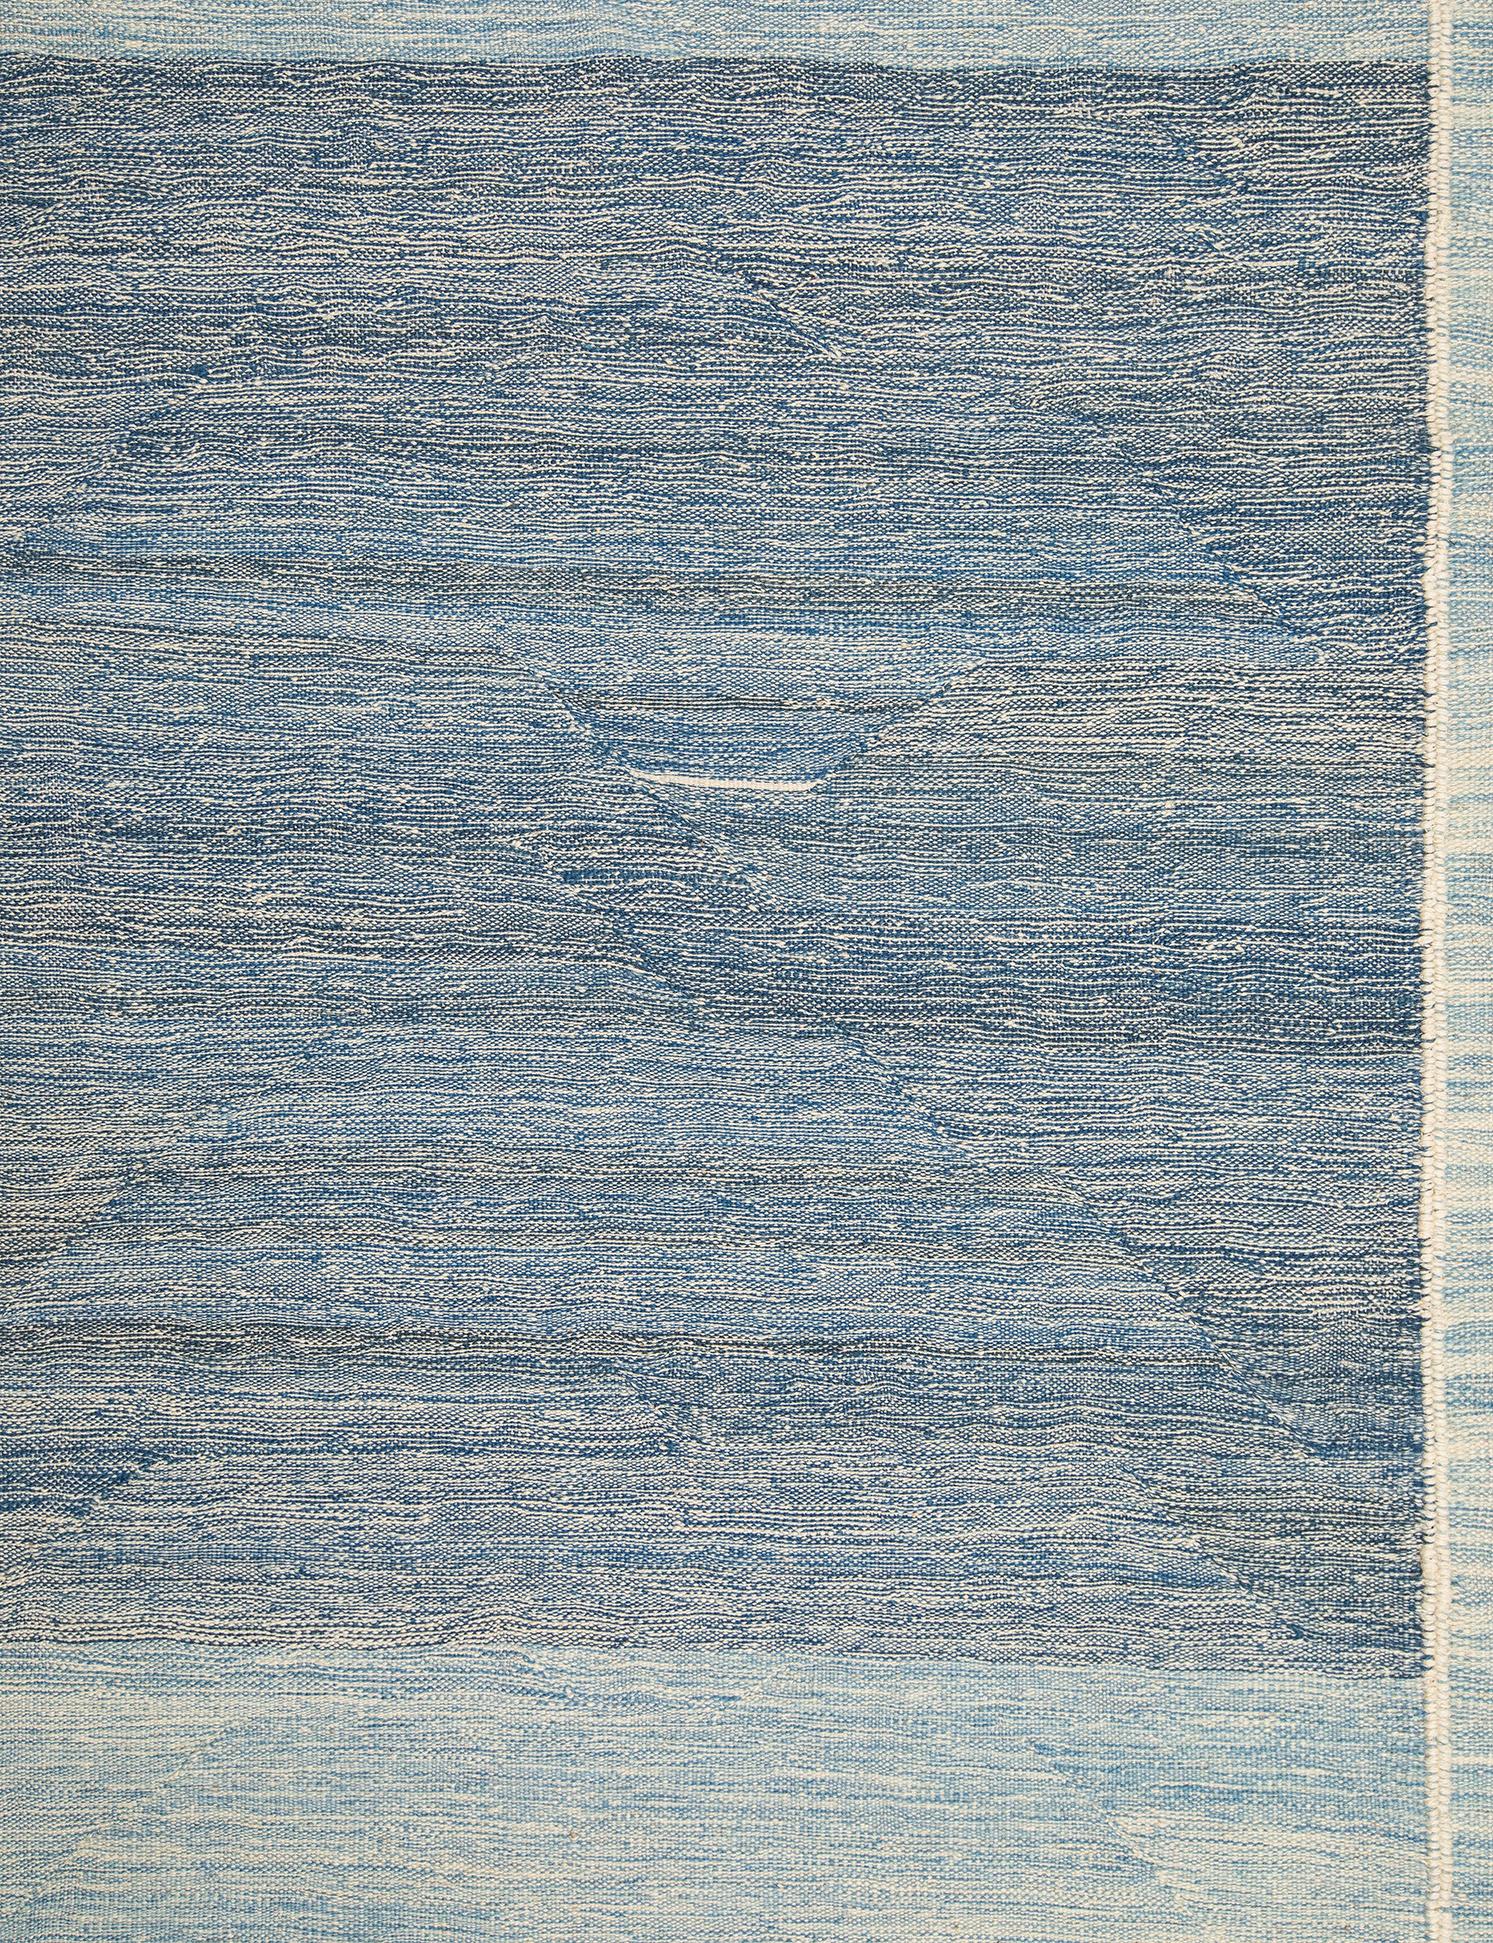 Dies ist ein atemberaubender Flachgewebeteppich im minimalistischen Stil der Mitte des Jahrhunderts.  Die handgefertigte Natur des Stücks bringt schöne Variationen in den Blautönen hervor.  Sie können satte Farbtöne von Meerschaum, Ozean- und